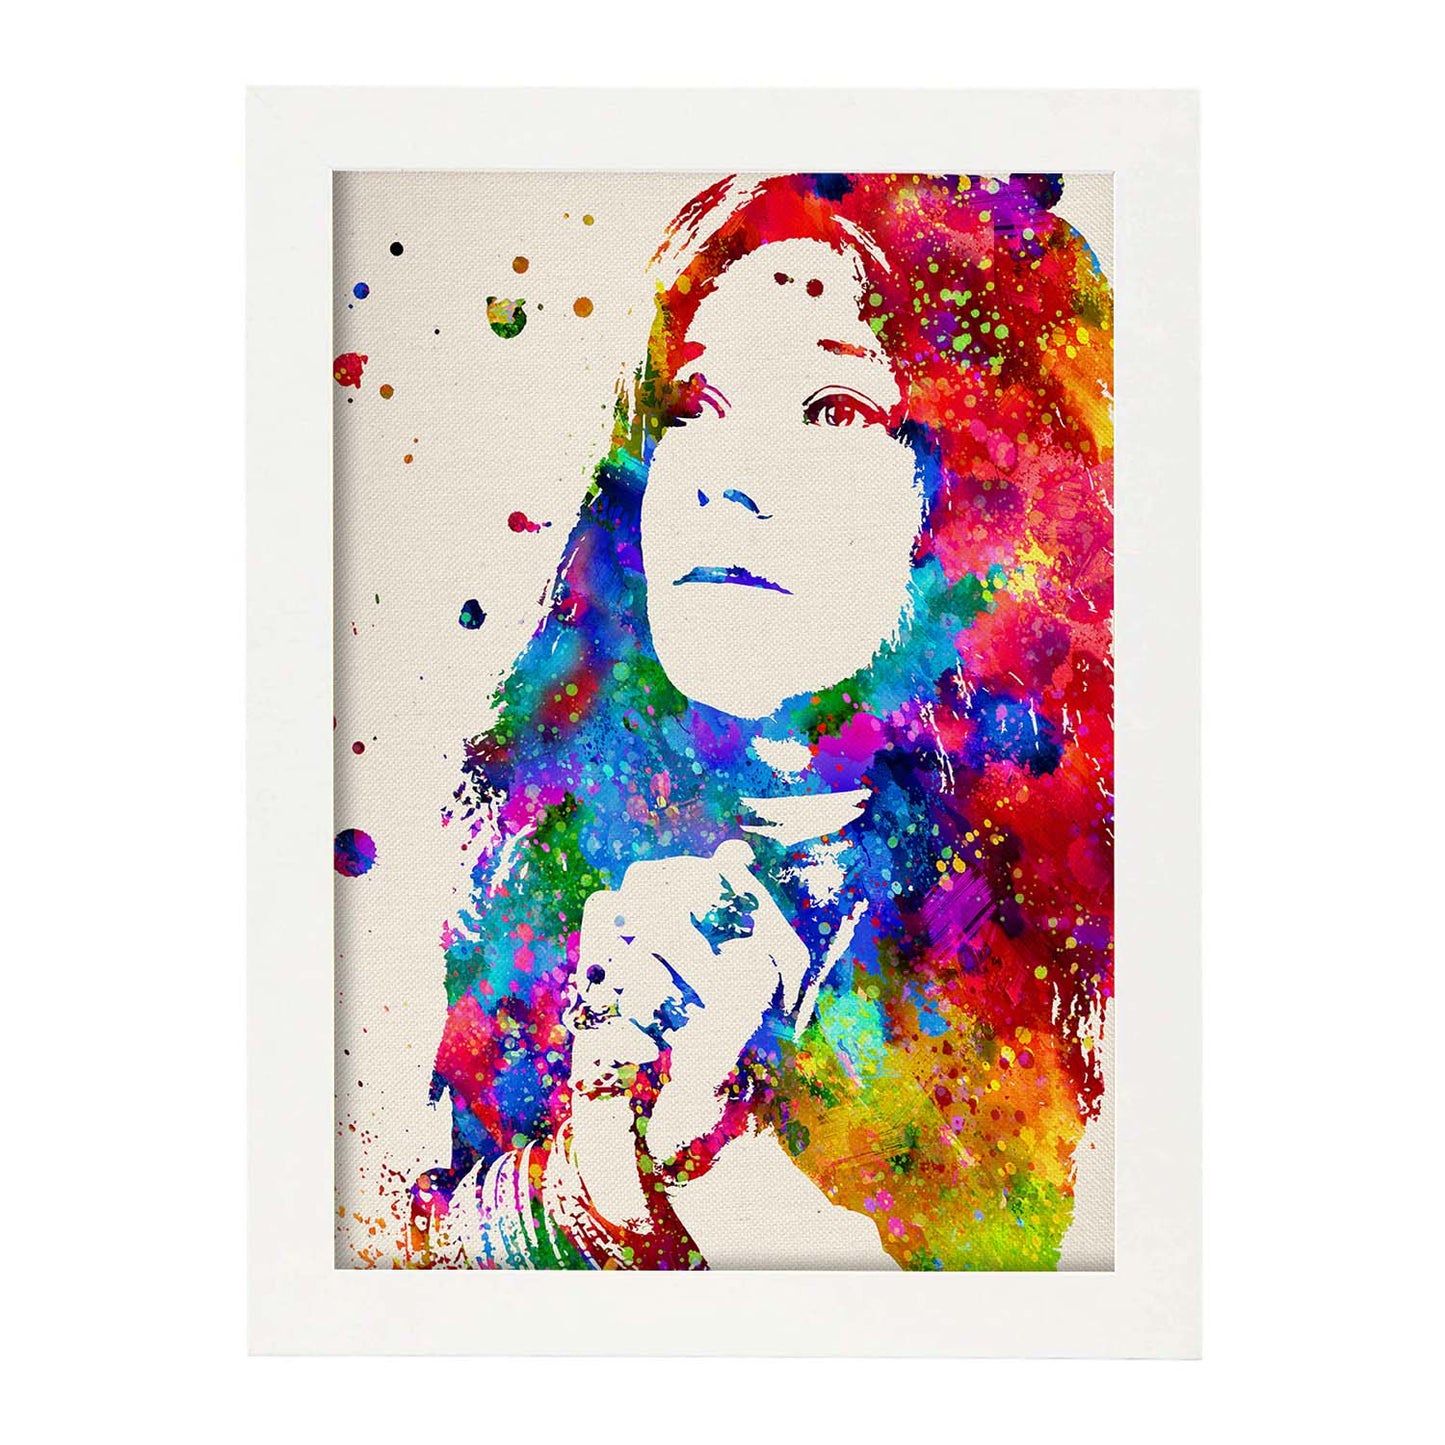 Poster imagen de Janis Joplin2. Posters con diseño acuarela de famosos, actores, músicos-Artwork-Nacnic-A4-Marco Blanco-Nacnic Estudio SL